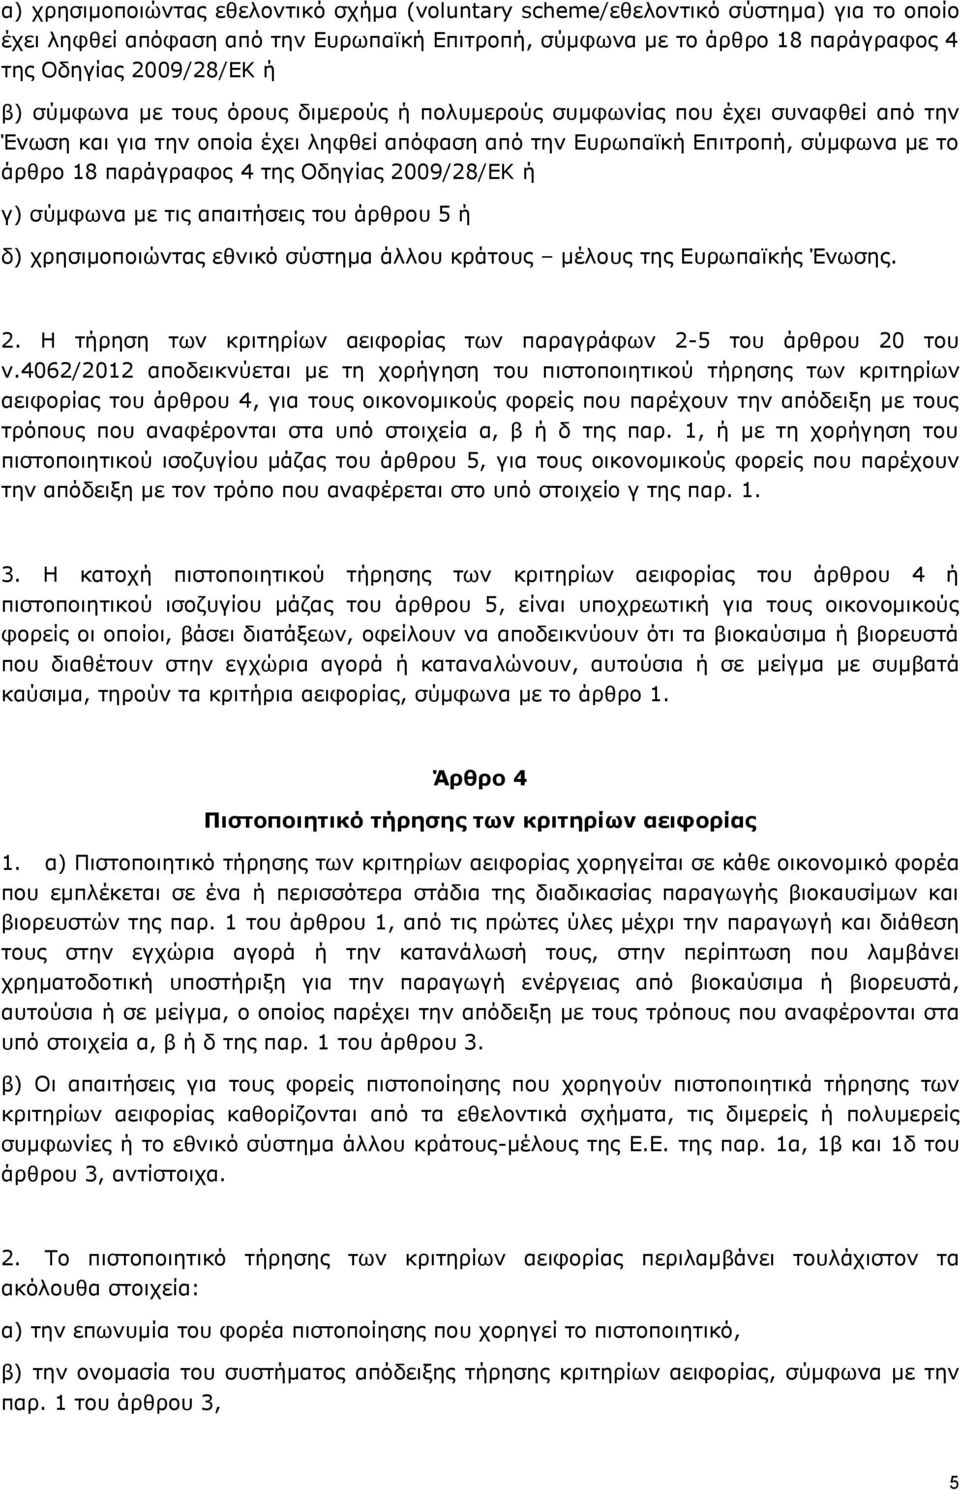 2009/28/ΕΚ ή γ) σύμφωνα με τις απαιτήσεις του άρθρου 5 ή δ) χρησιμοποιώντας εθνικό σύστημα άλλου κράτους μέλους της Ευρωπαϊκής Ένωσης. 2.